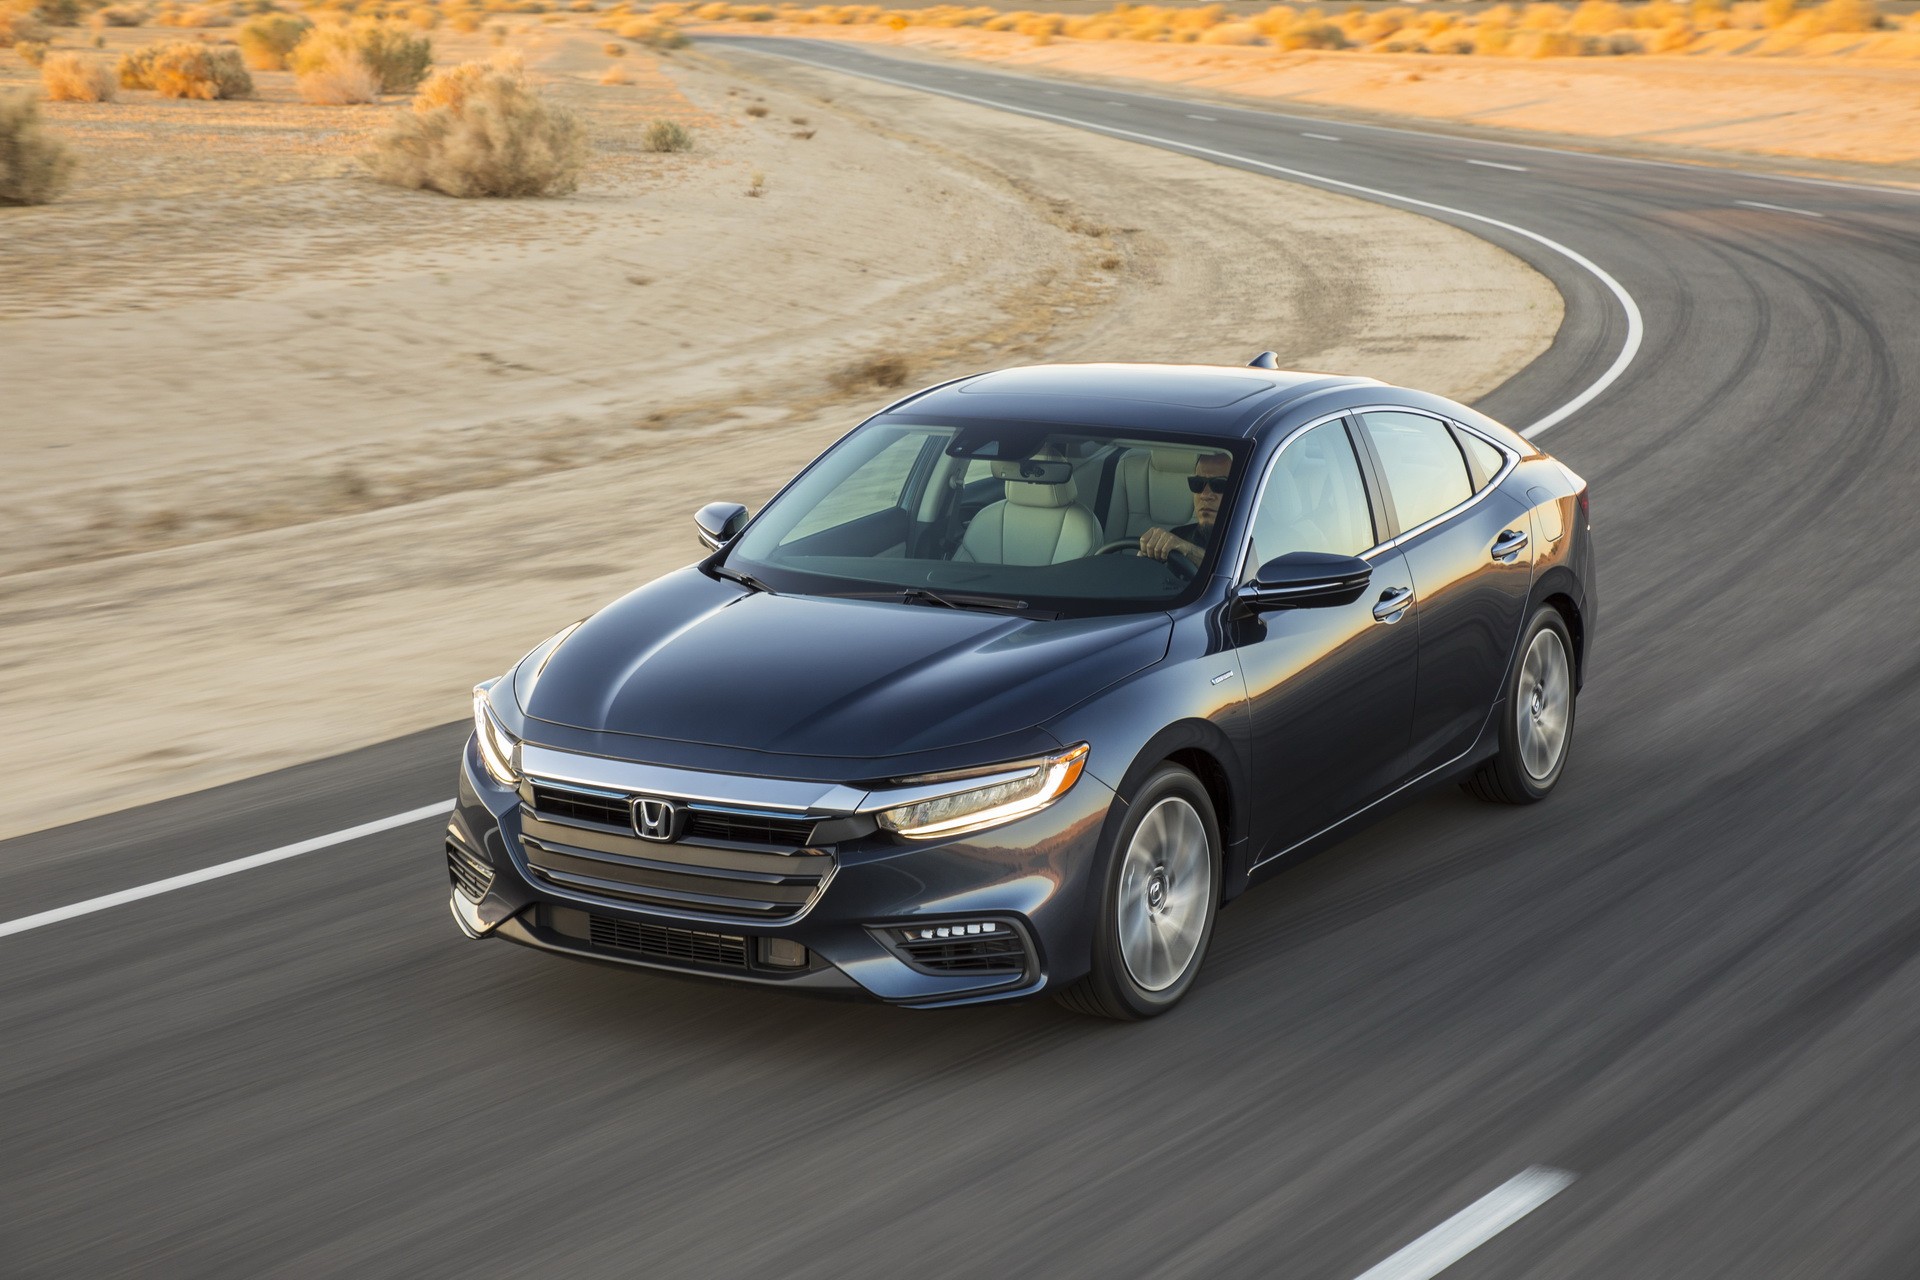 2019 Honda Insight Hybrid Sedan Priced At 22,830 autoevolution